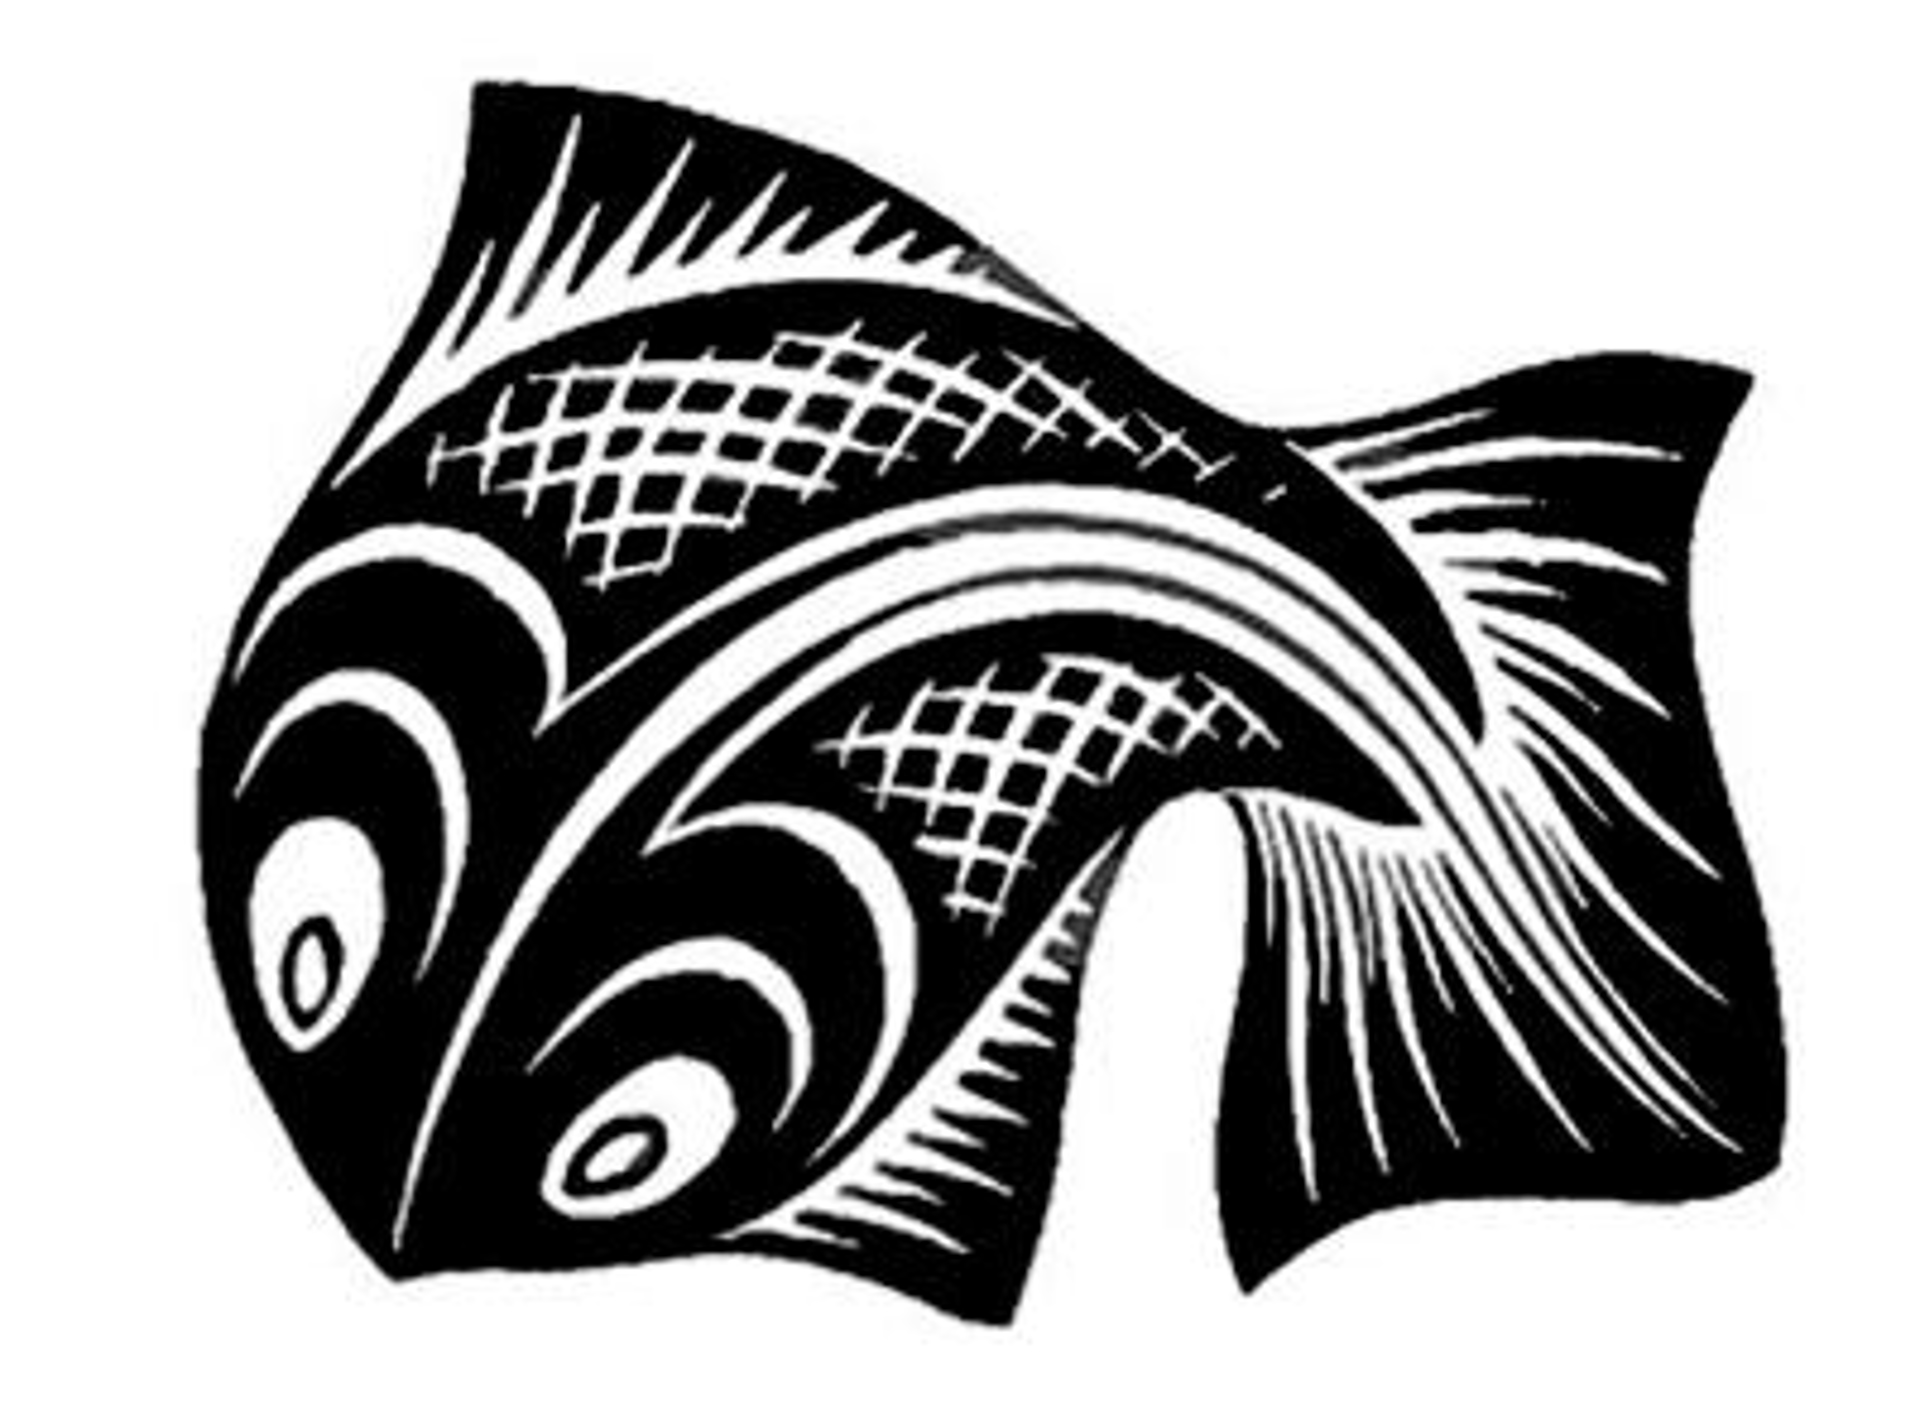 Fish by M.C. Escher